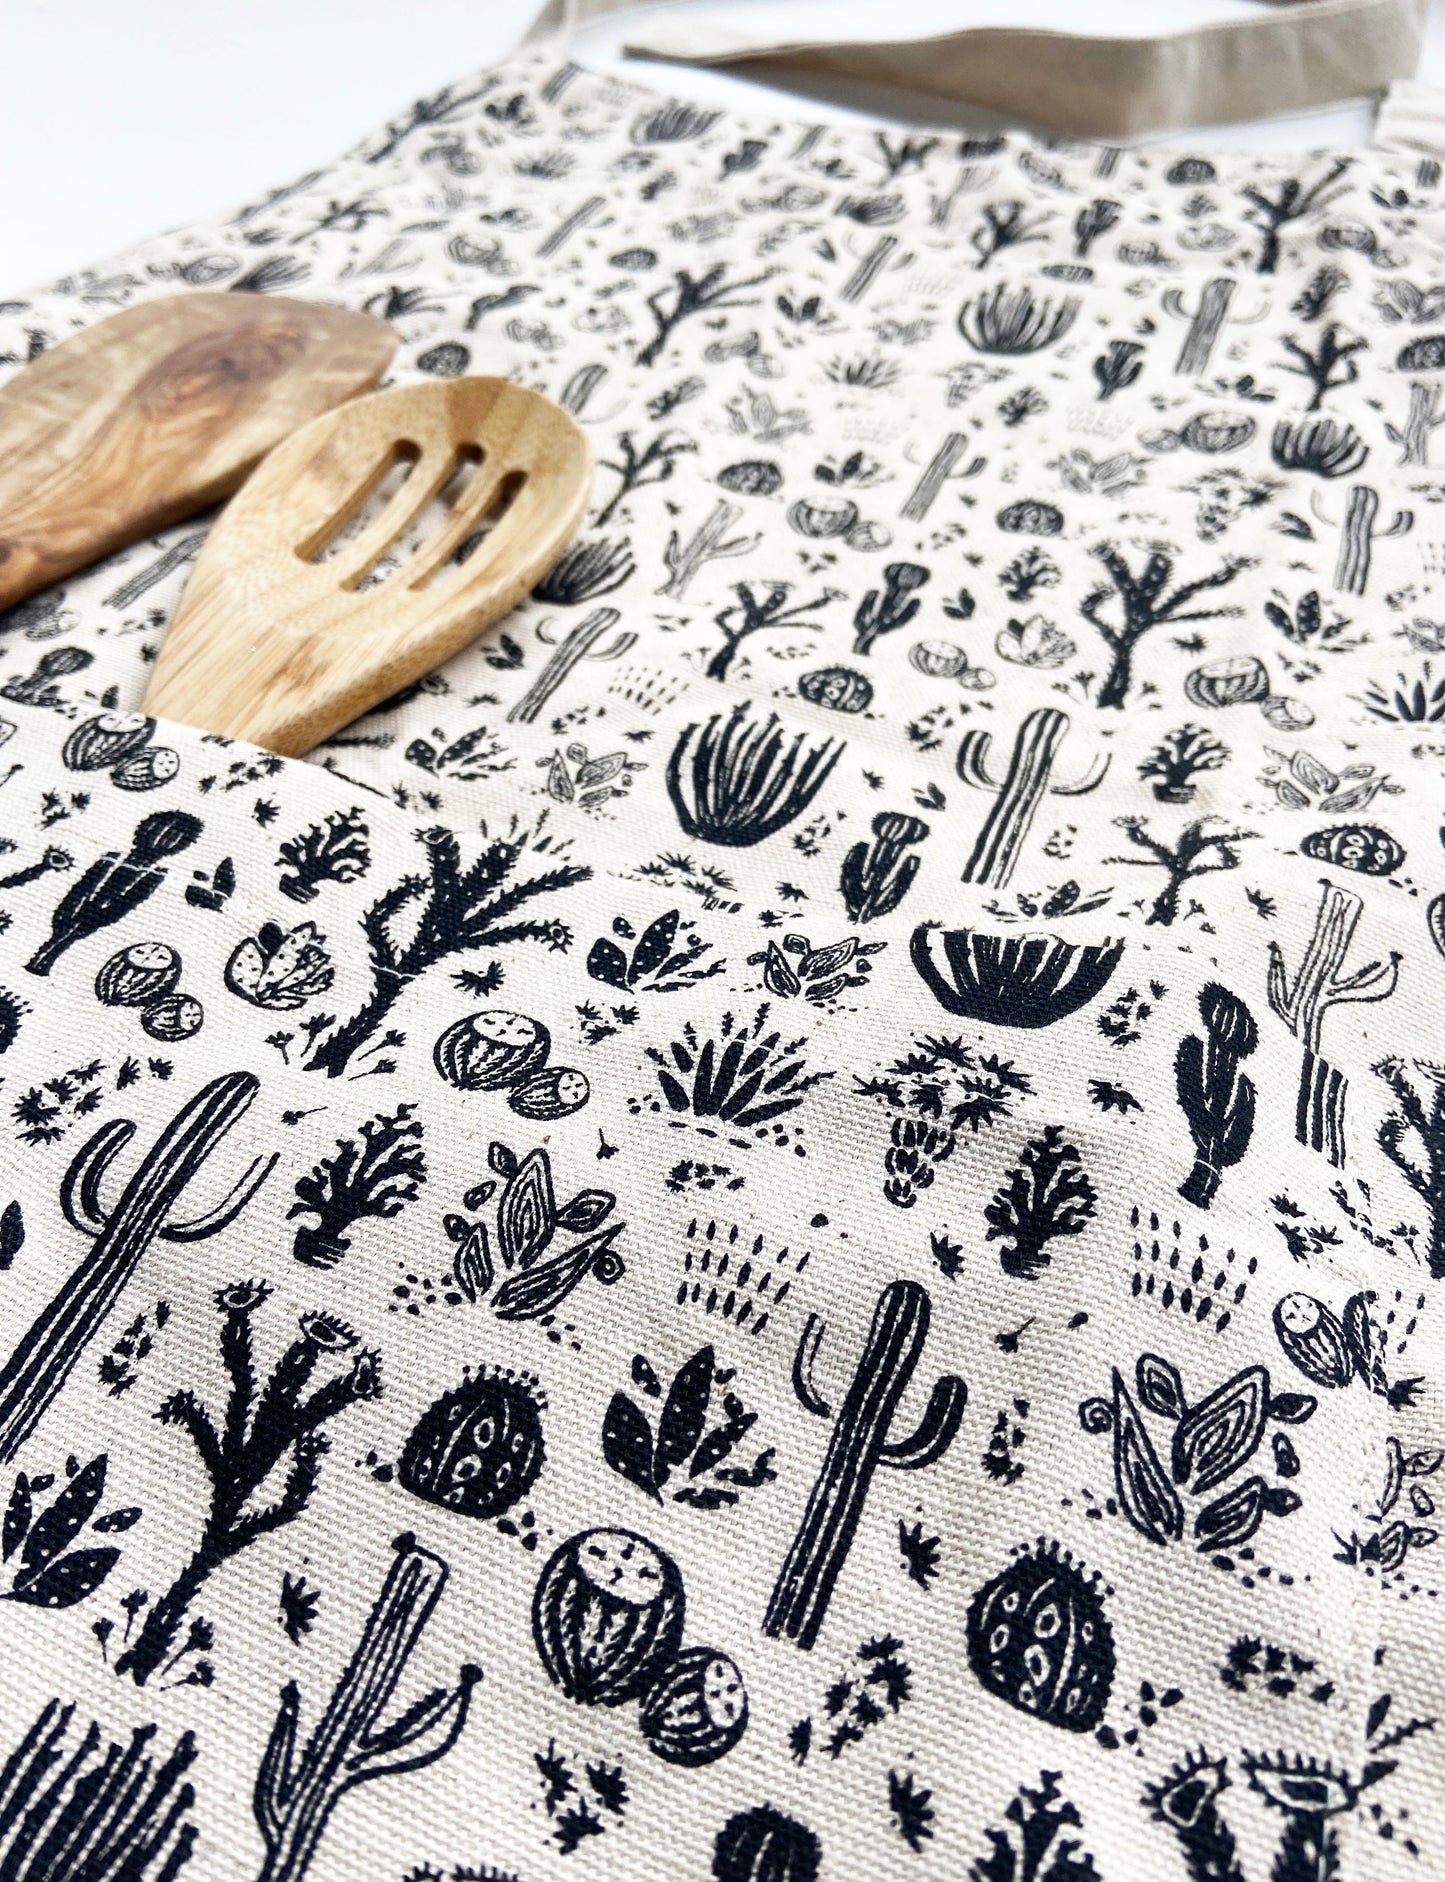 Unisex Apron - Desert Cactus Pattern - Natural Cotton Canvas